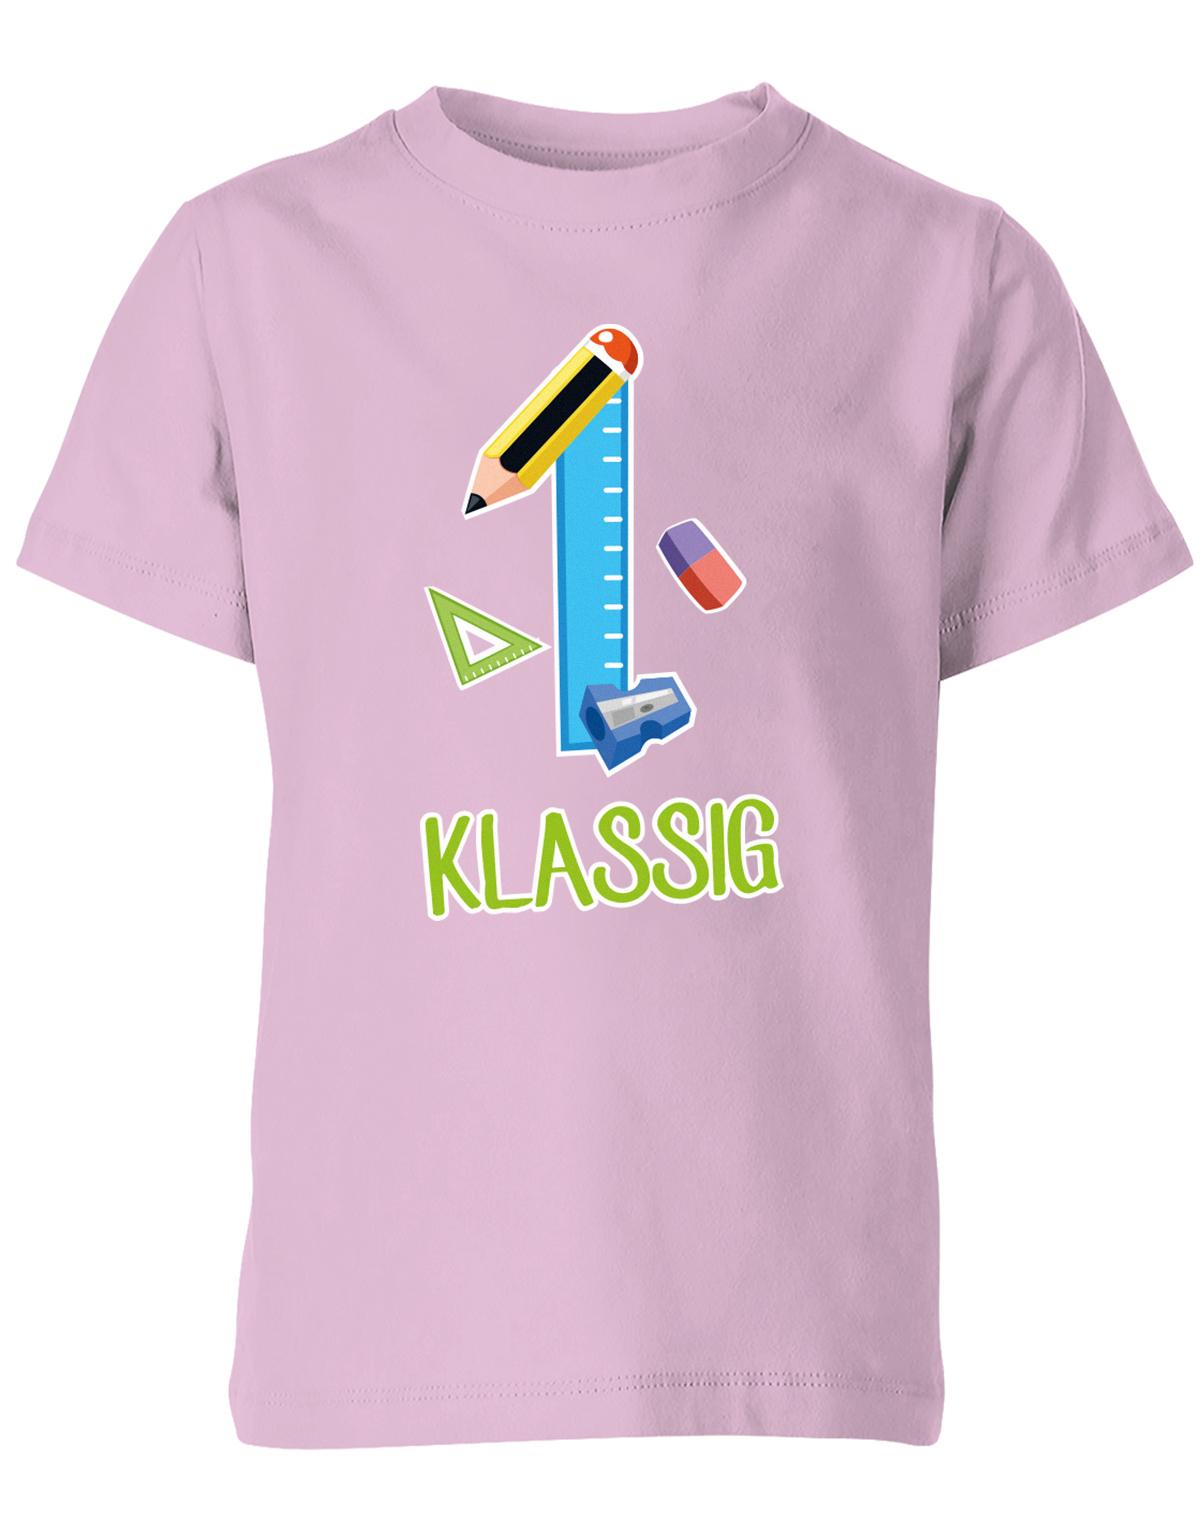 Schulkind 2023 Erst Klassig - Geschenk zur Einschulung 1. Klasse - Schule - Kinder T-Shirt Rosa